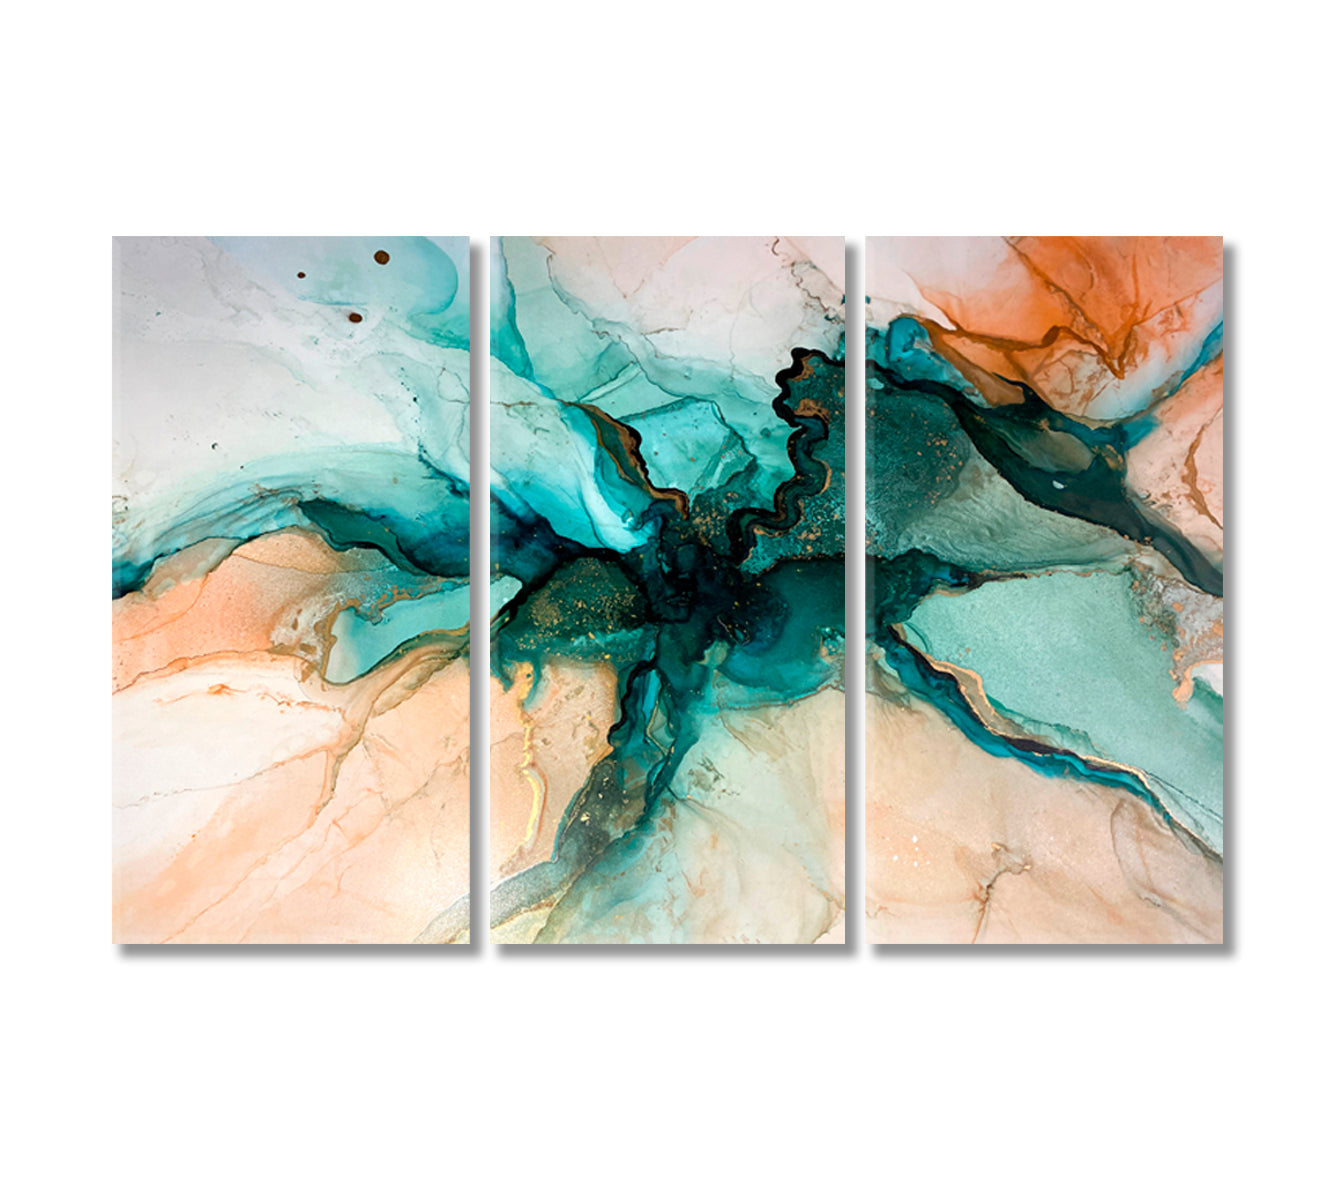 Mixed Liquid Green Paints Fluid Art Canvas Print-Canvas Print-CetArt-3 Panels-36x24 inches-CetArt